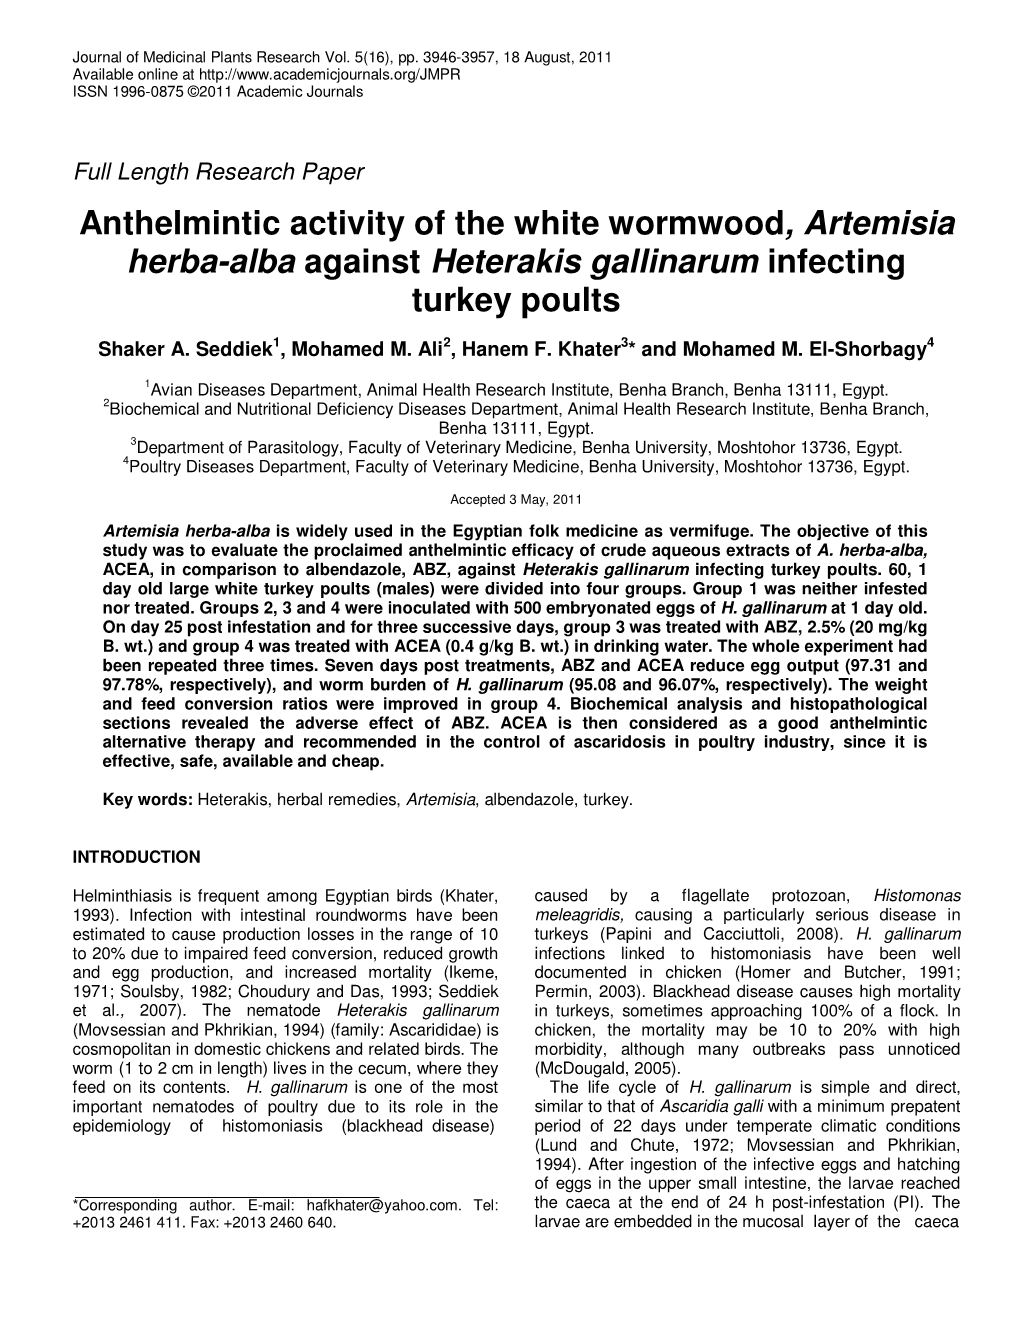 Anthelmintic Activity of the White Wormwood, Artemisia Herba-Alba